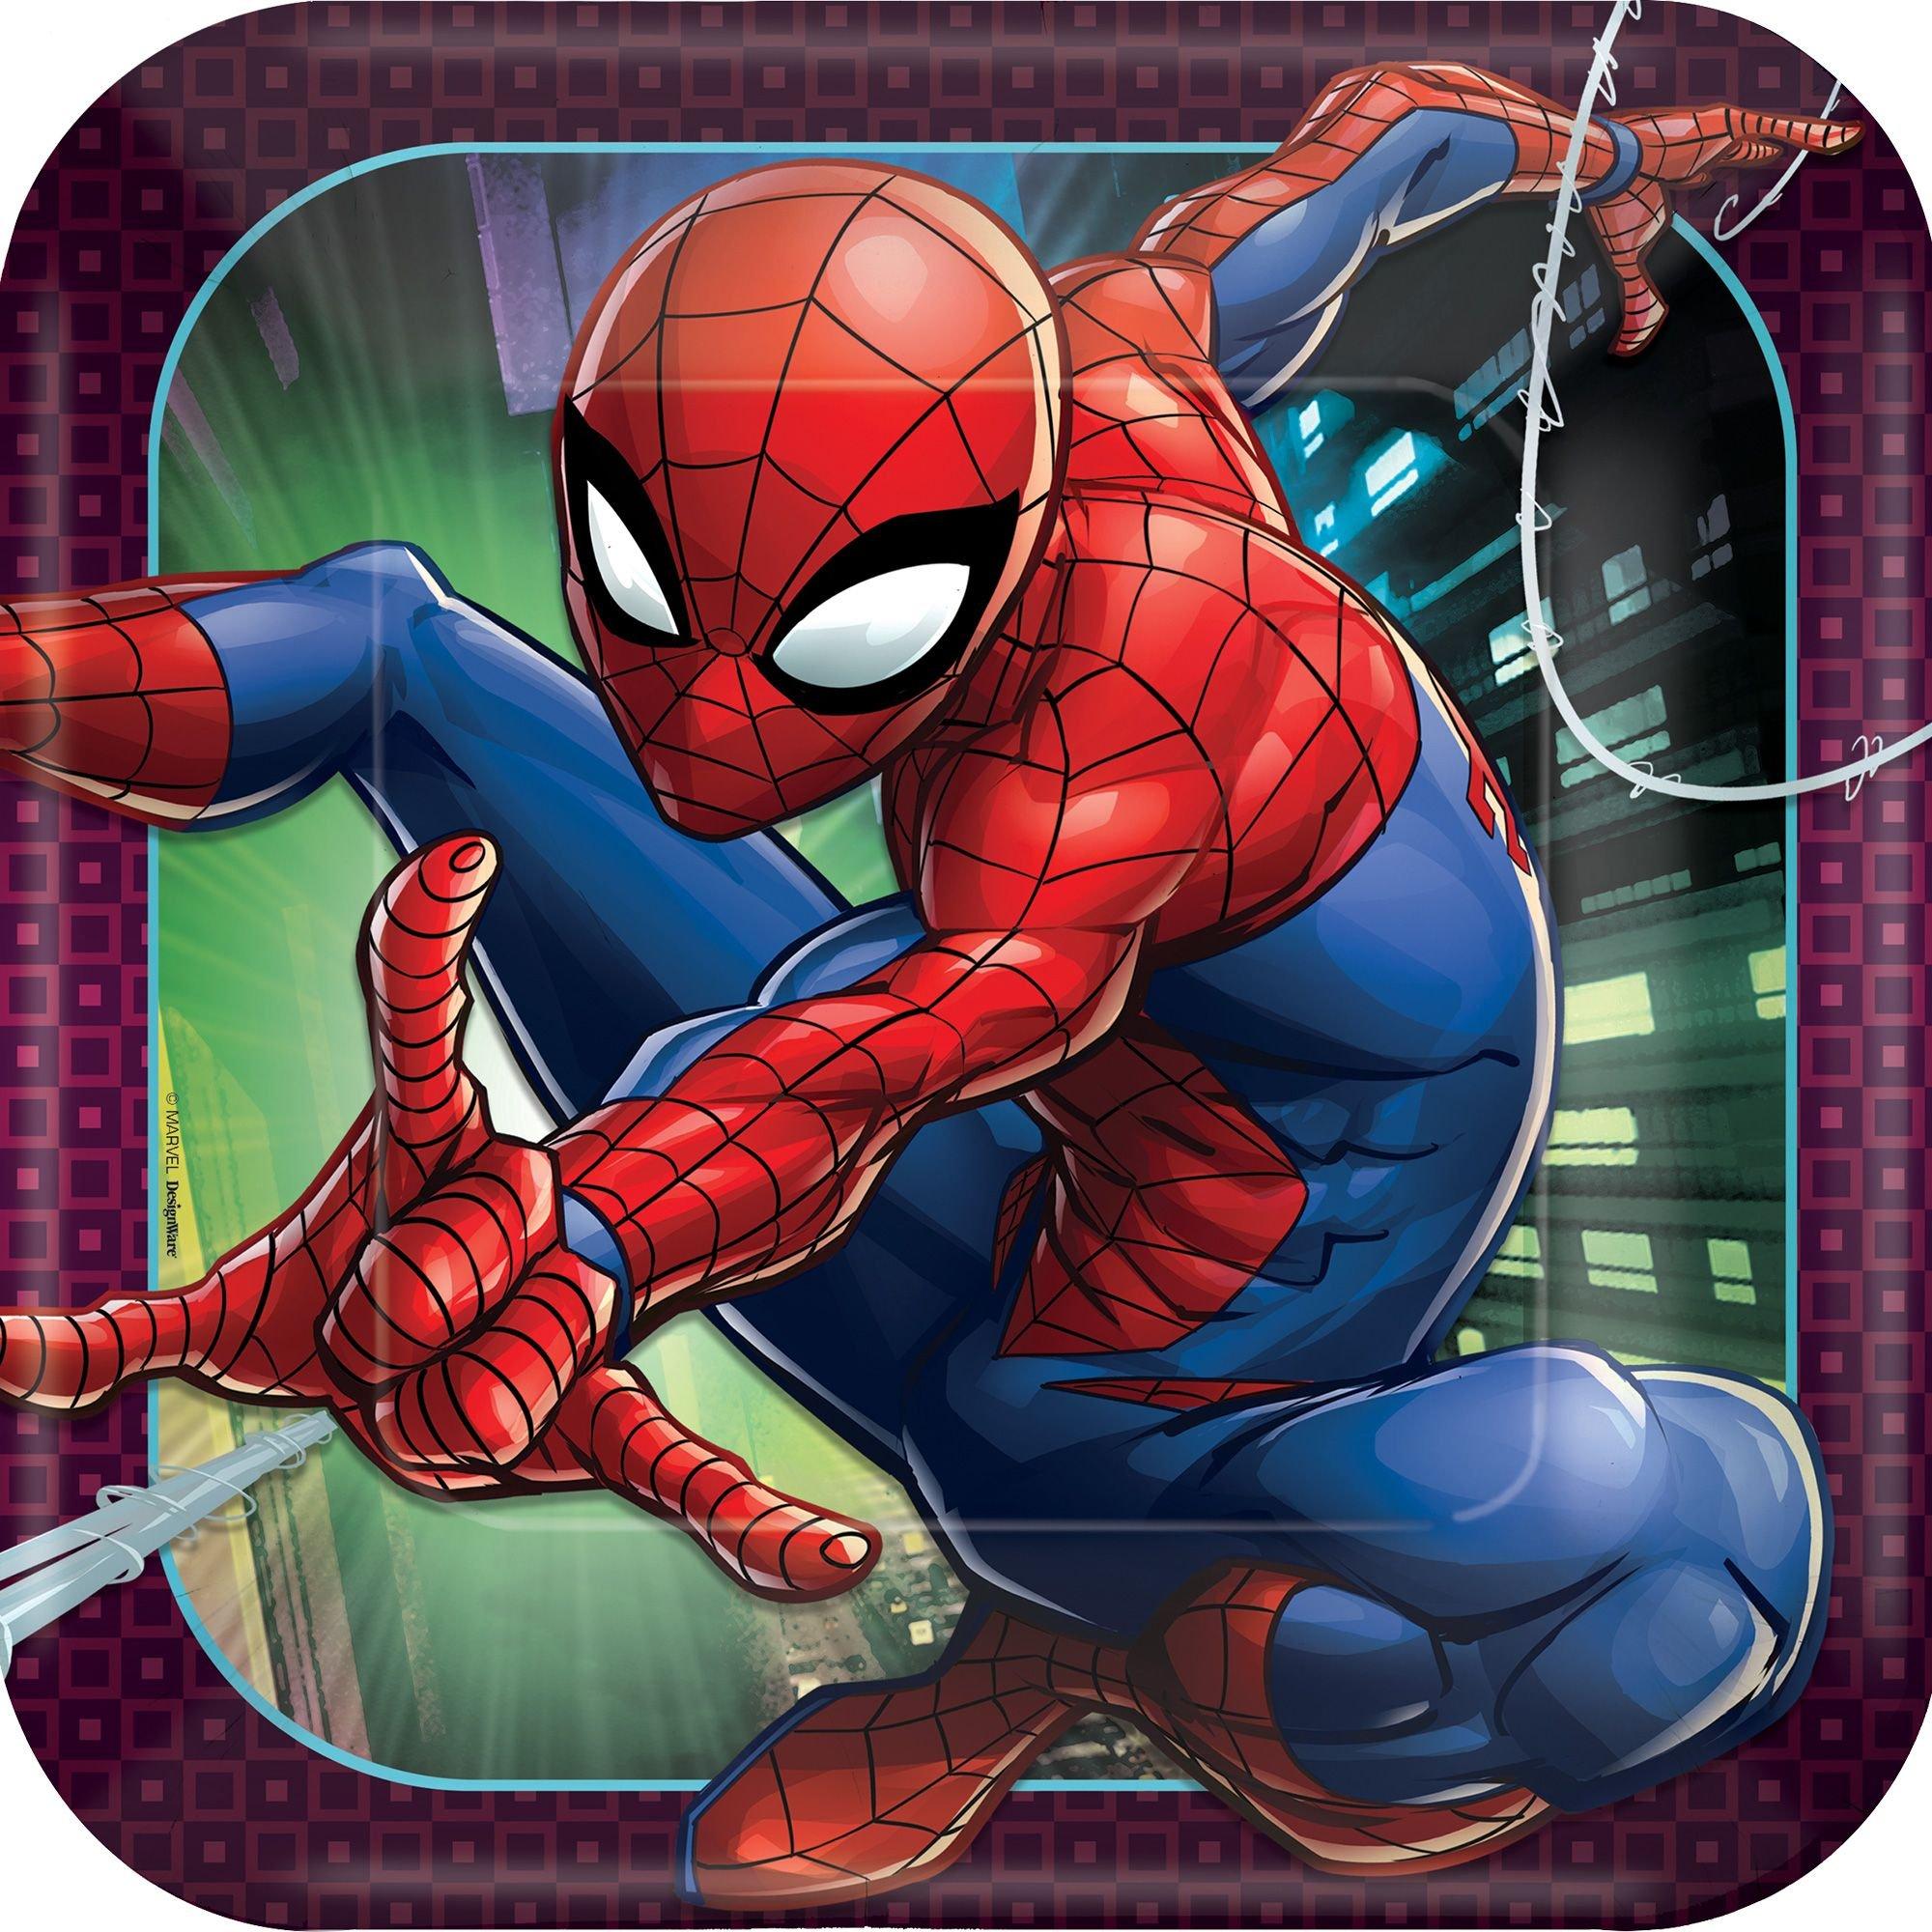 Balão Bubble Spider Man Web Slinger - Super Herois - Artigos para Festas -  Party City